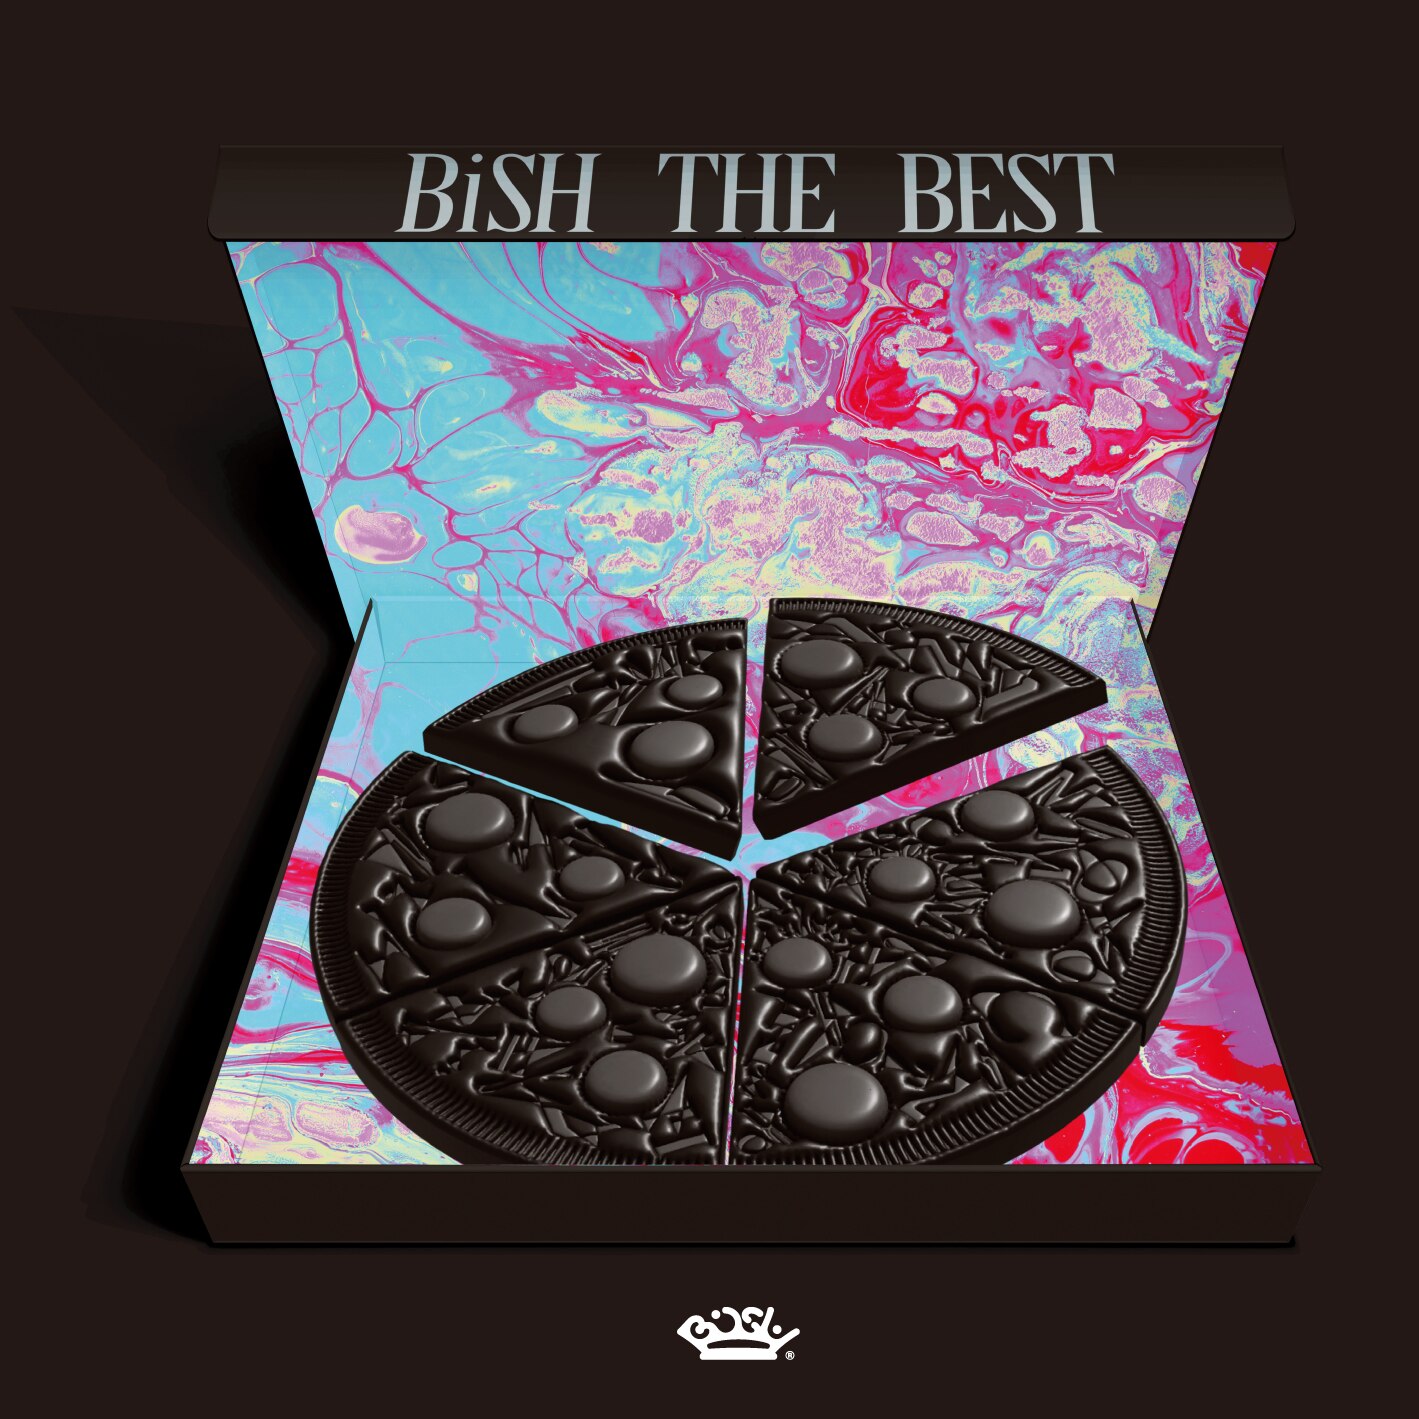 BiSH THE BESTコンプリートBOX盤